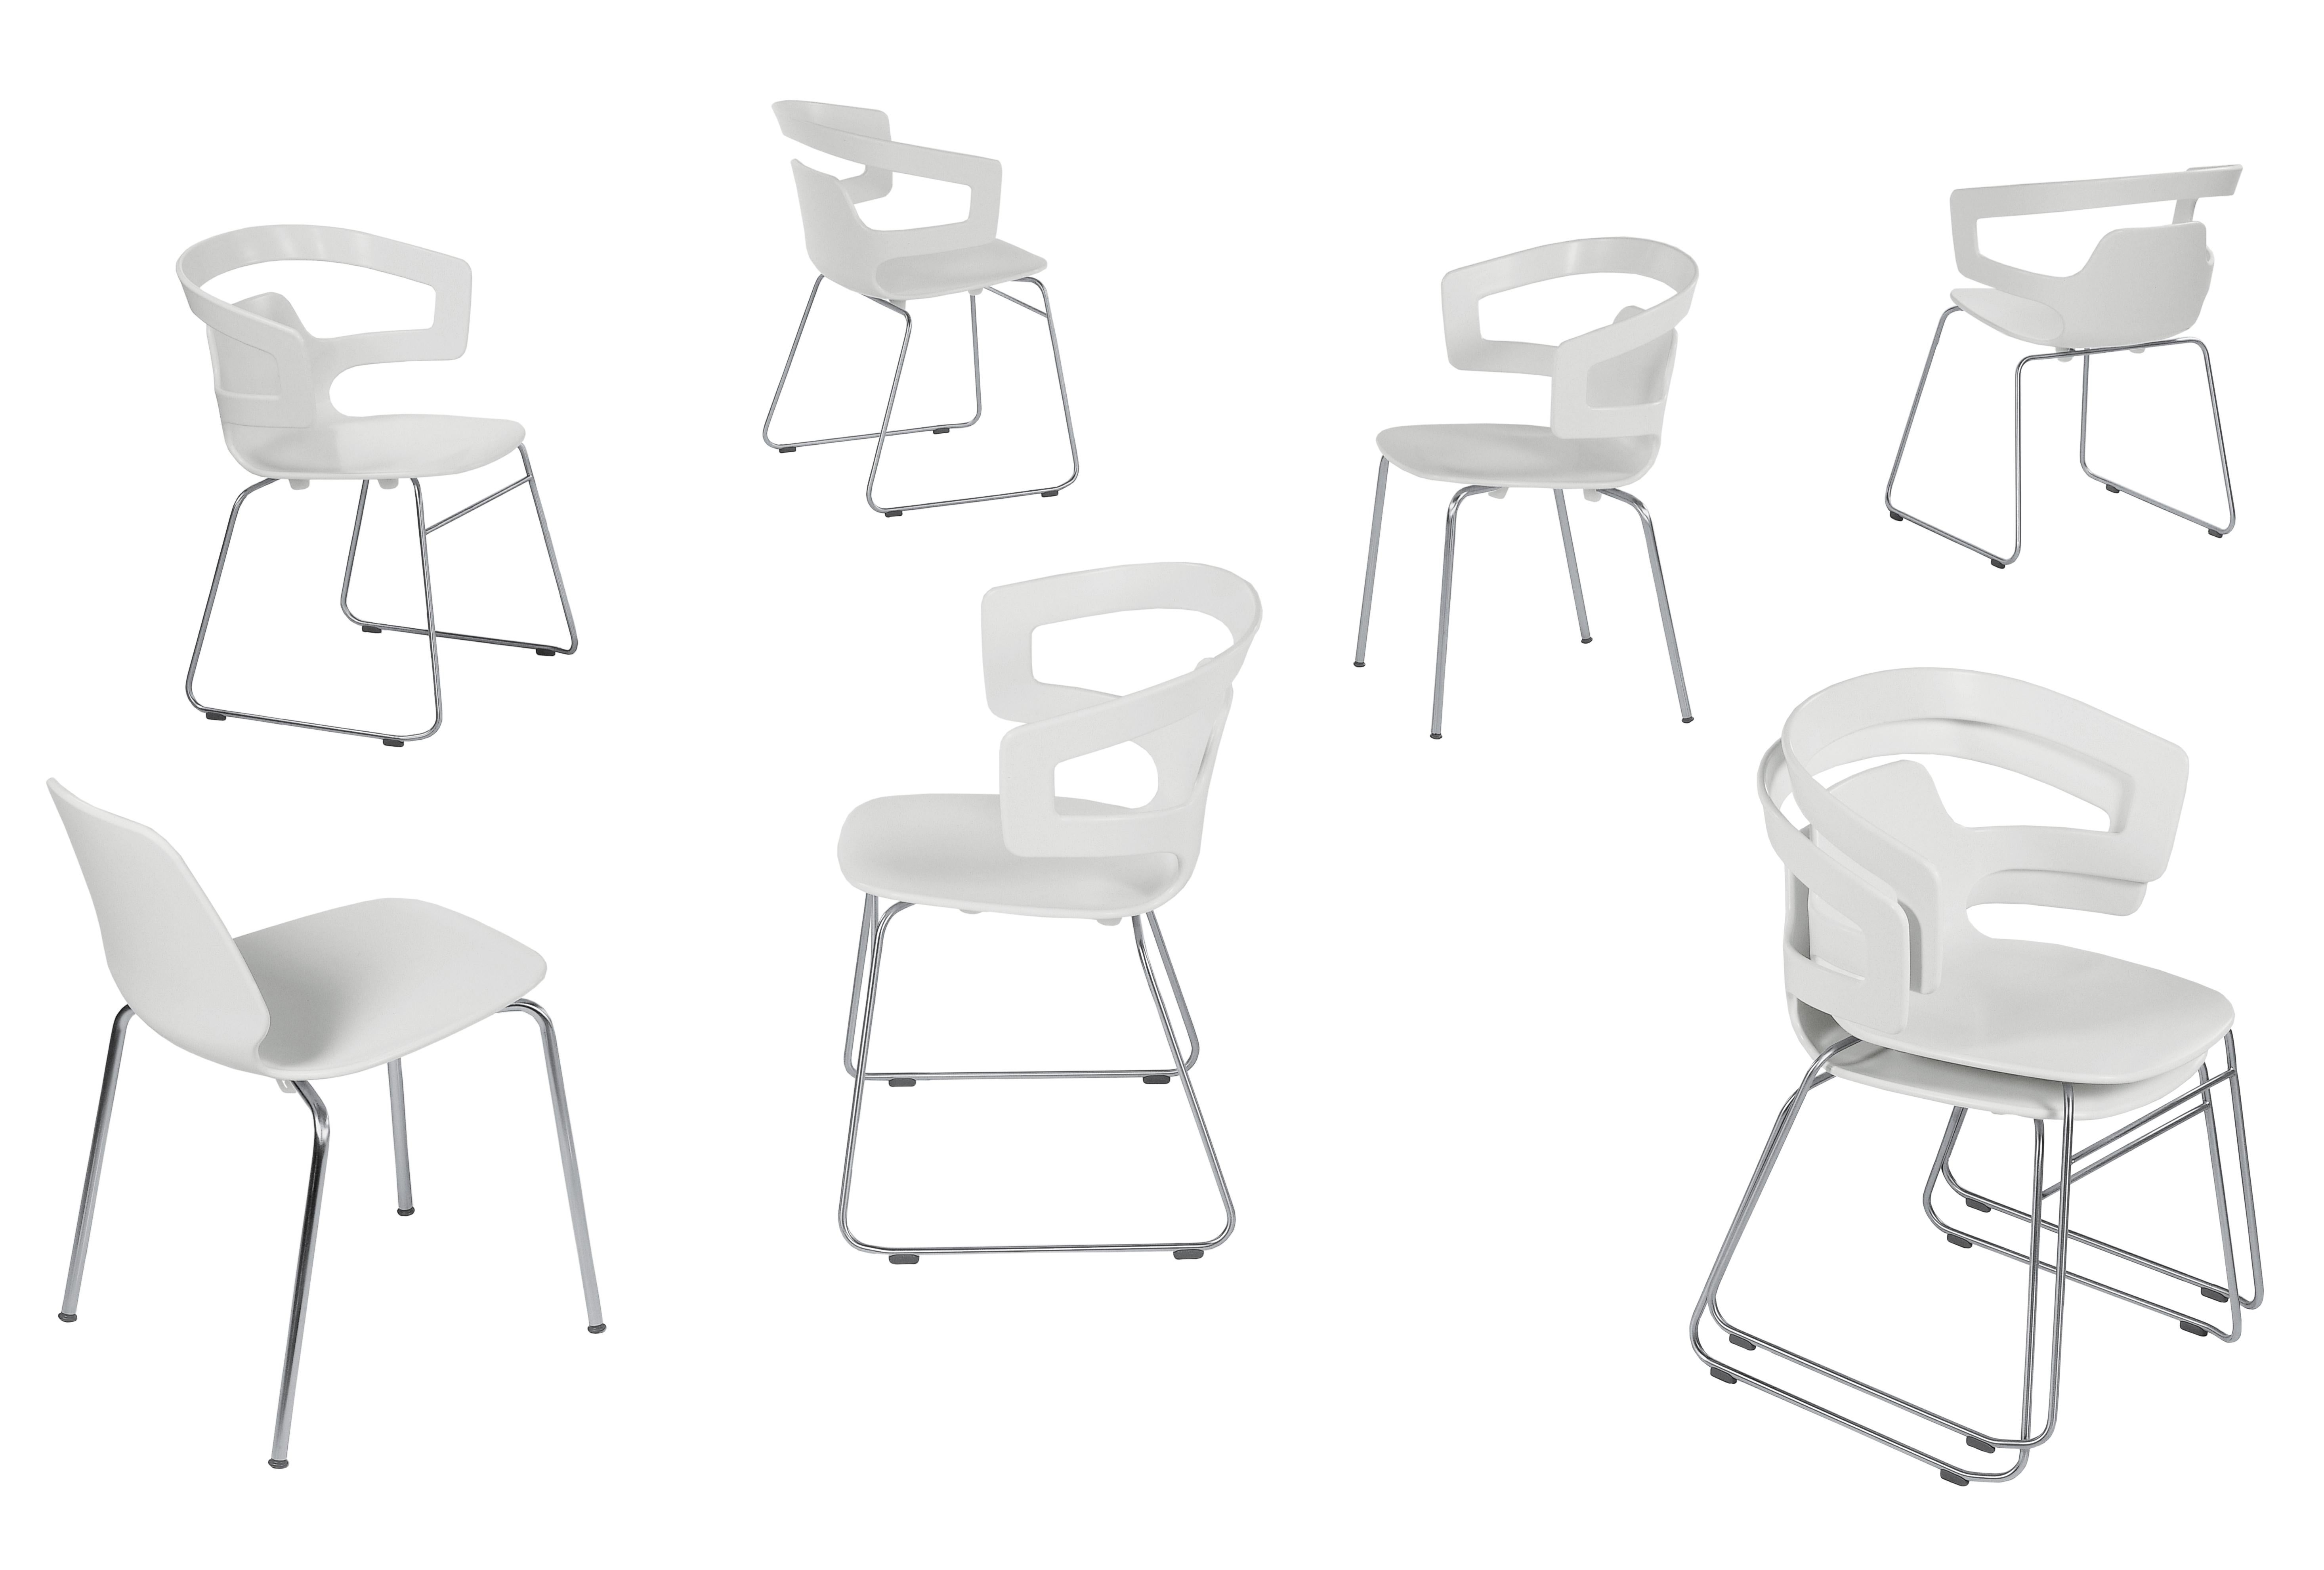 Alias 501 Segesta Schlittenstuhl mit weiß lackiertem Stahlgestell von Alfredo Häberli

Stapelbarer Stuhl mit Armlehnen mit Struktur aus lackiertem oder verchromtem Stahl; Sitz und Rückenlehne aus massivem Kunststoff.

Er wurde 1964 in Buenos